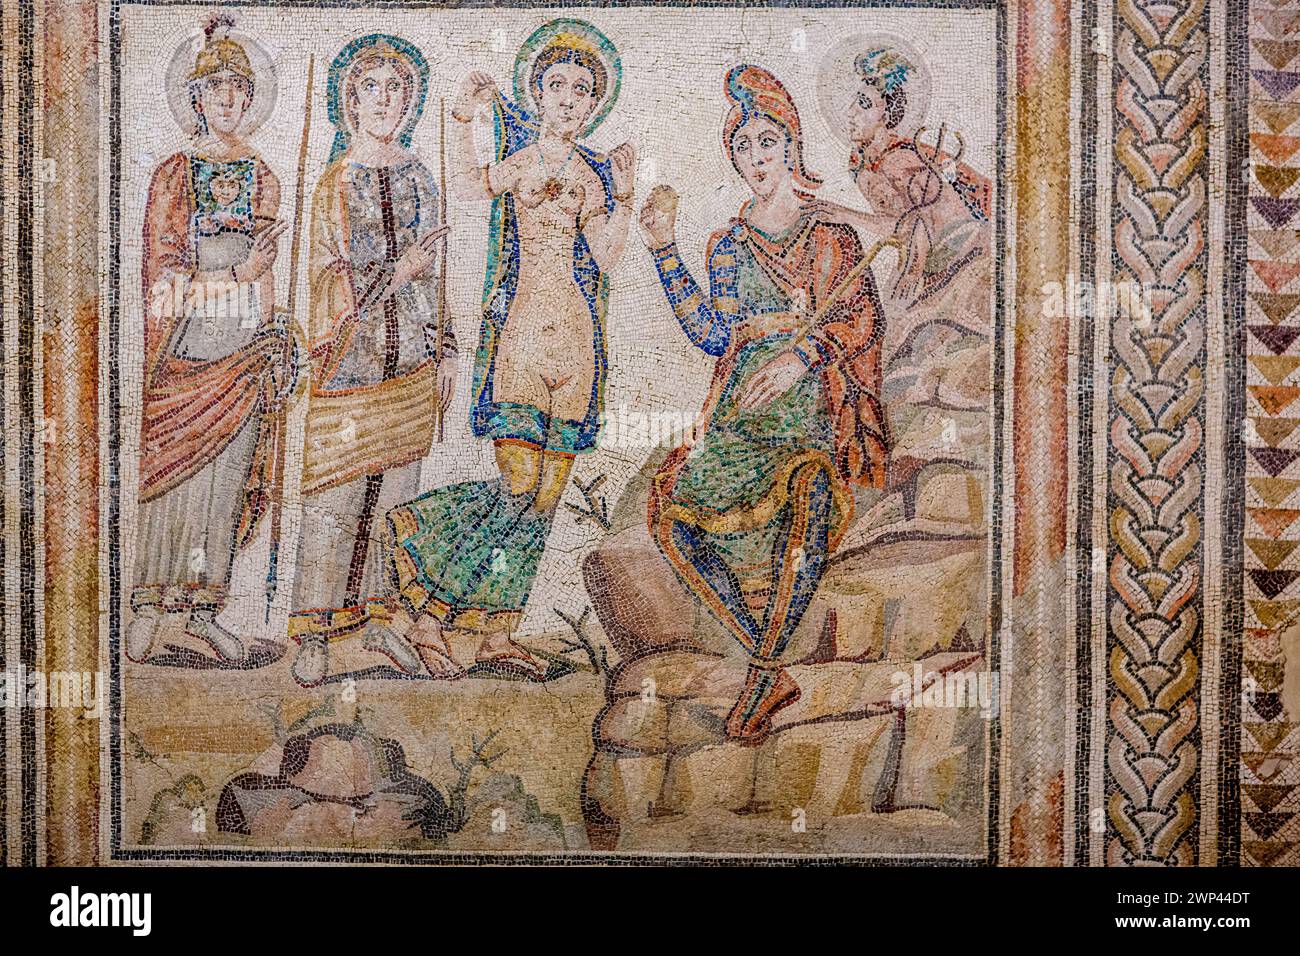 Altes römisches Mosaik, das das mythische Gericht von Paris darstellt, ausgestellt im Archäologischen Museum von Sevilles. Stockfoto